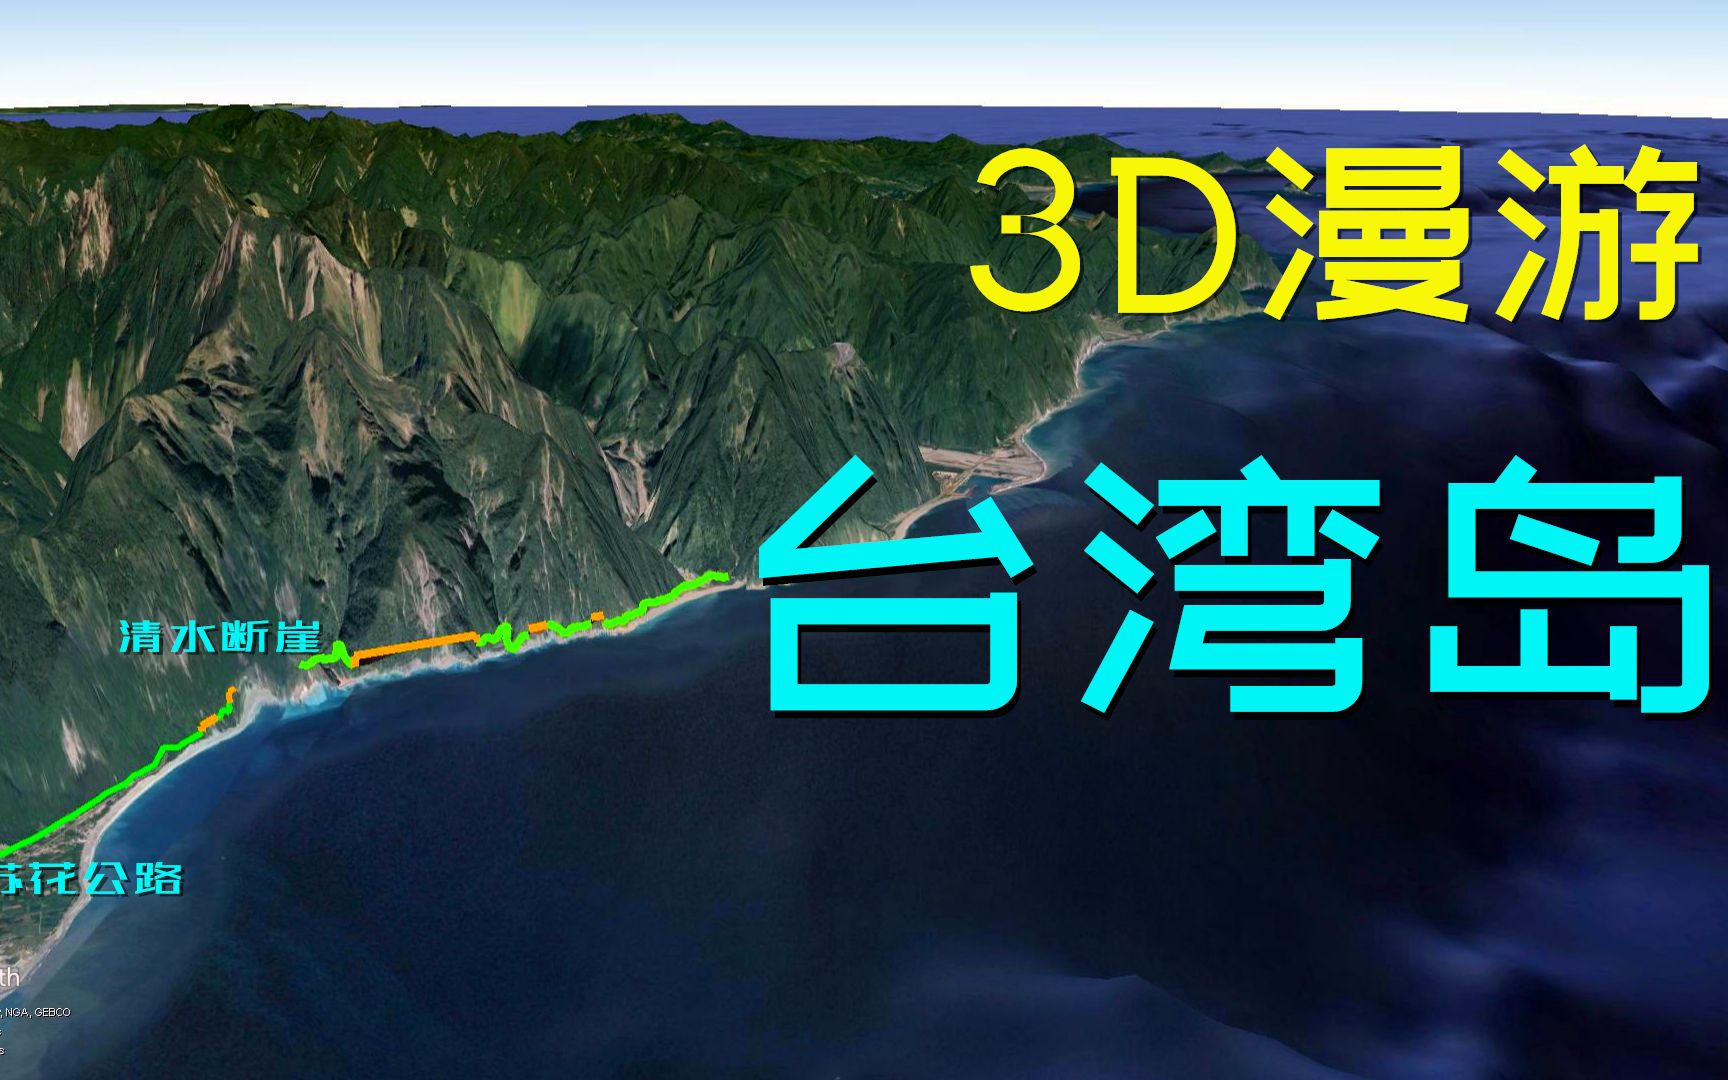 三维地图漫游台湾岛,看图说史,宝岛壮丽之山川,世间少有